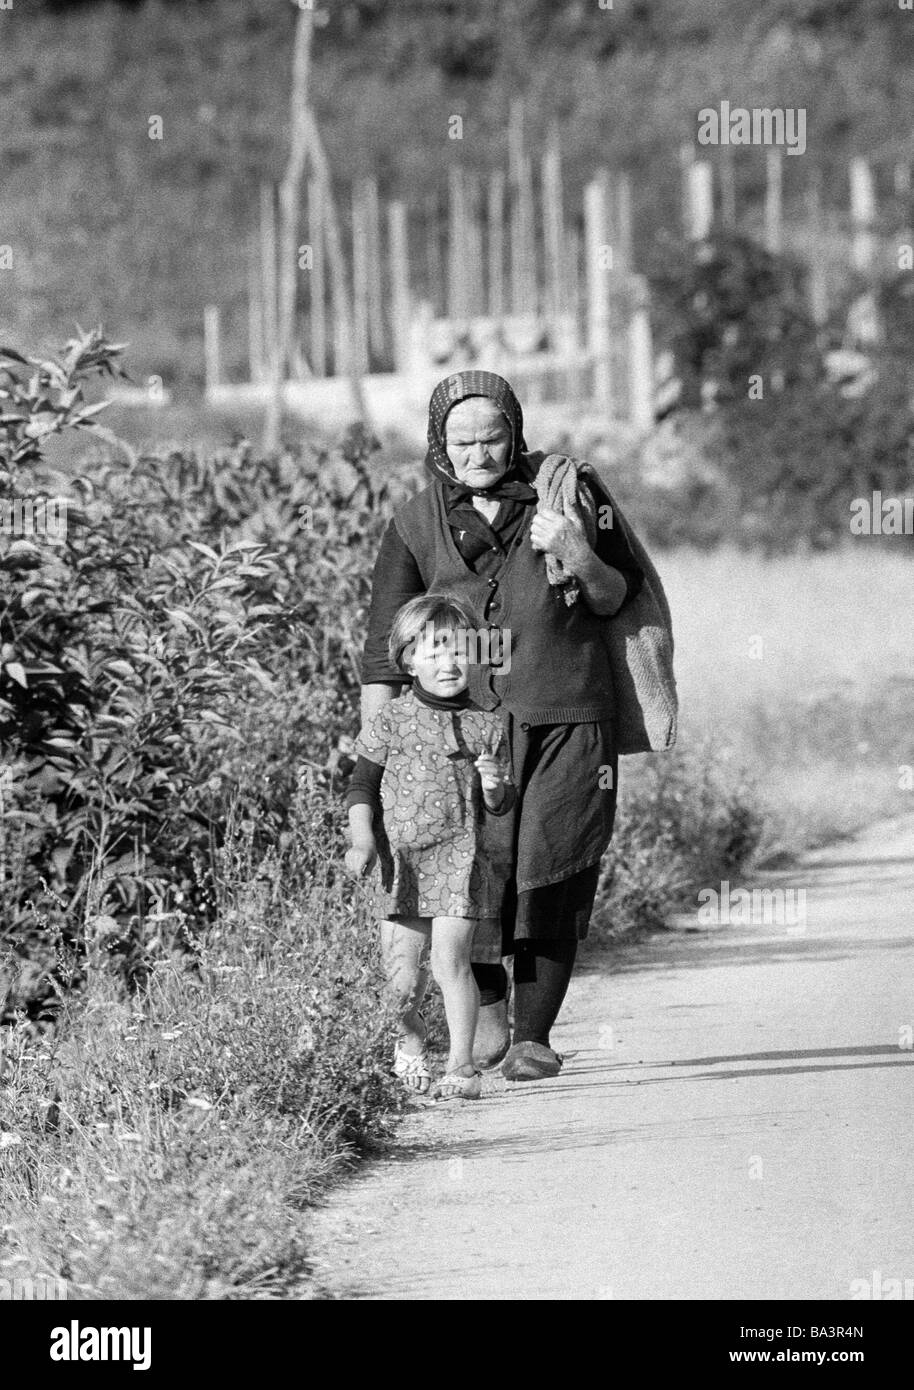 Negli anni settanta, foto in bianco e nero, persone donna più anziana e il suo pronipote camminando sul raoadside di una strada di campagna, di età compresa tra 70 a 80 anni di età compresa tra i 4 e i 6 anni, Croazia, in quel momento in Jugoslavia, la Iugoslavia Foto Stock